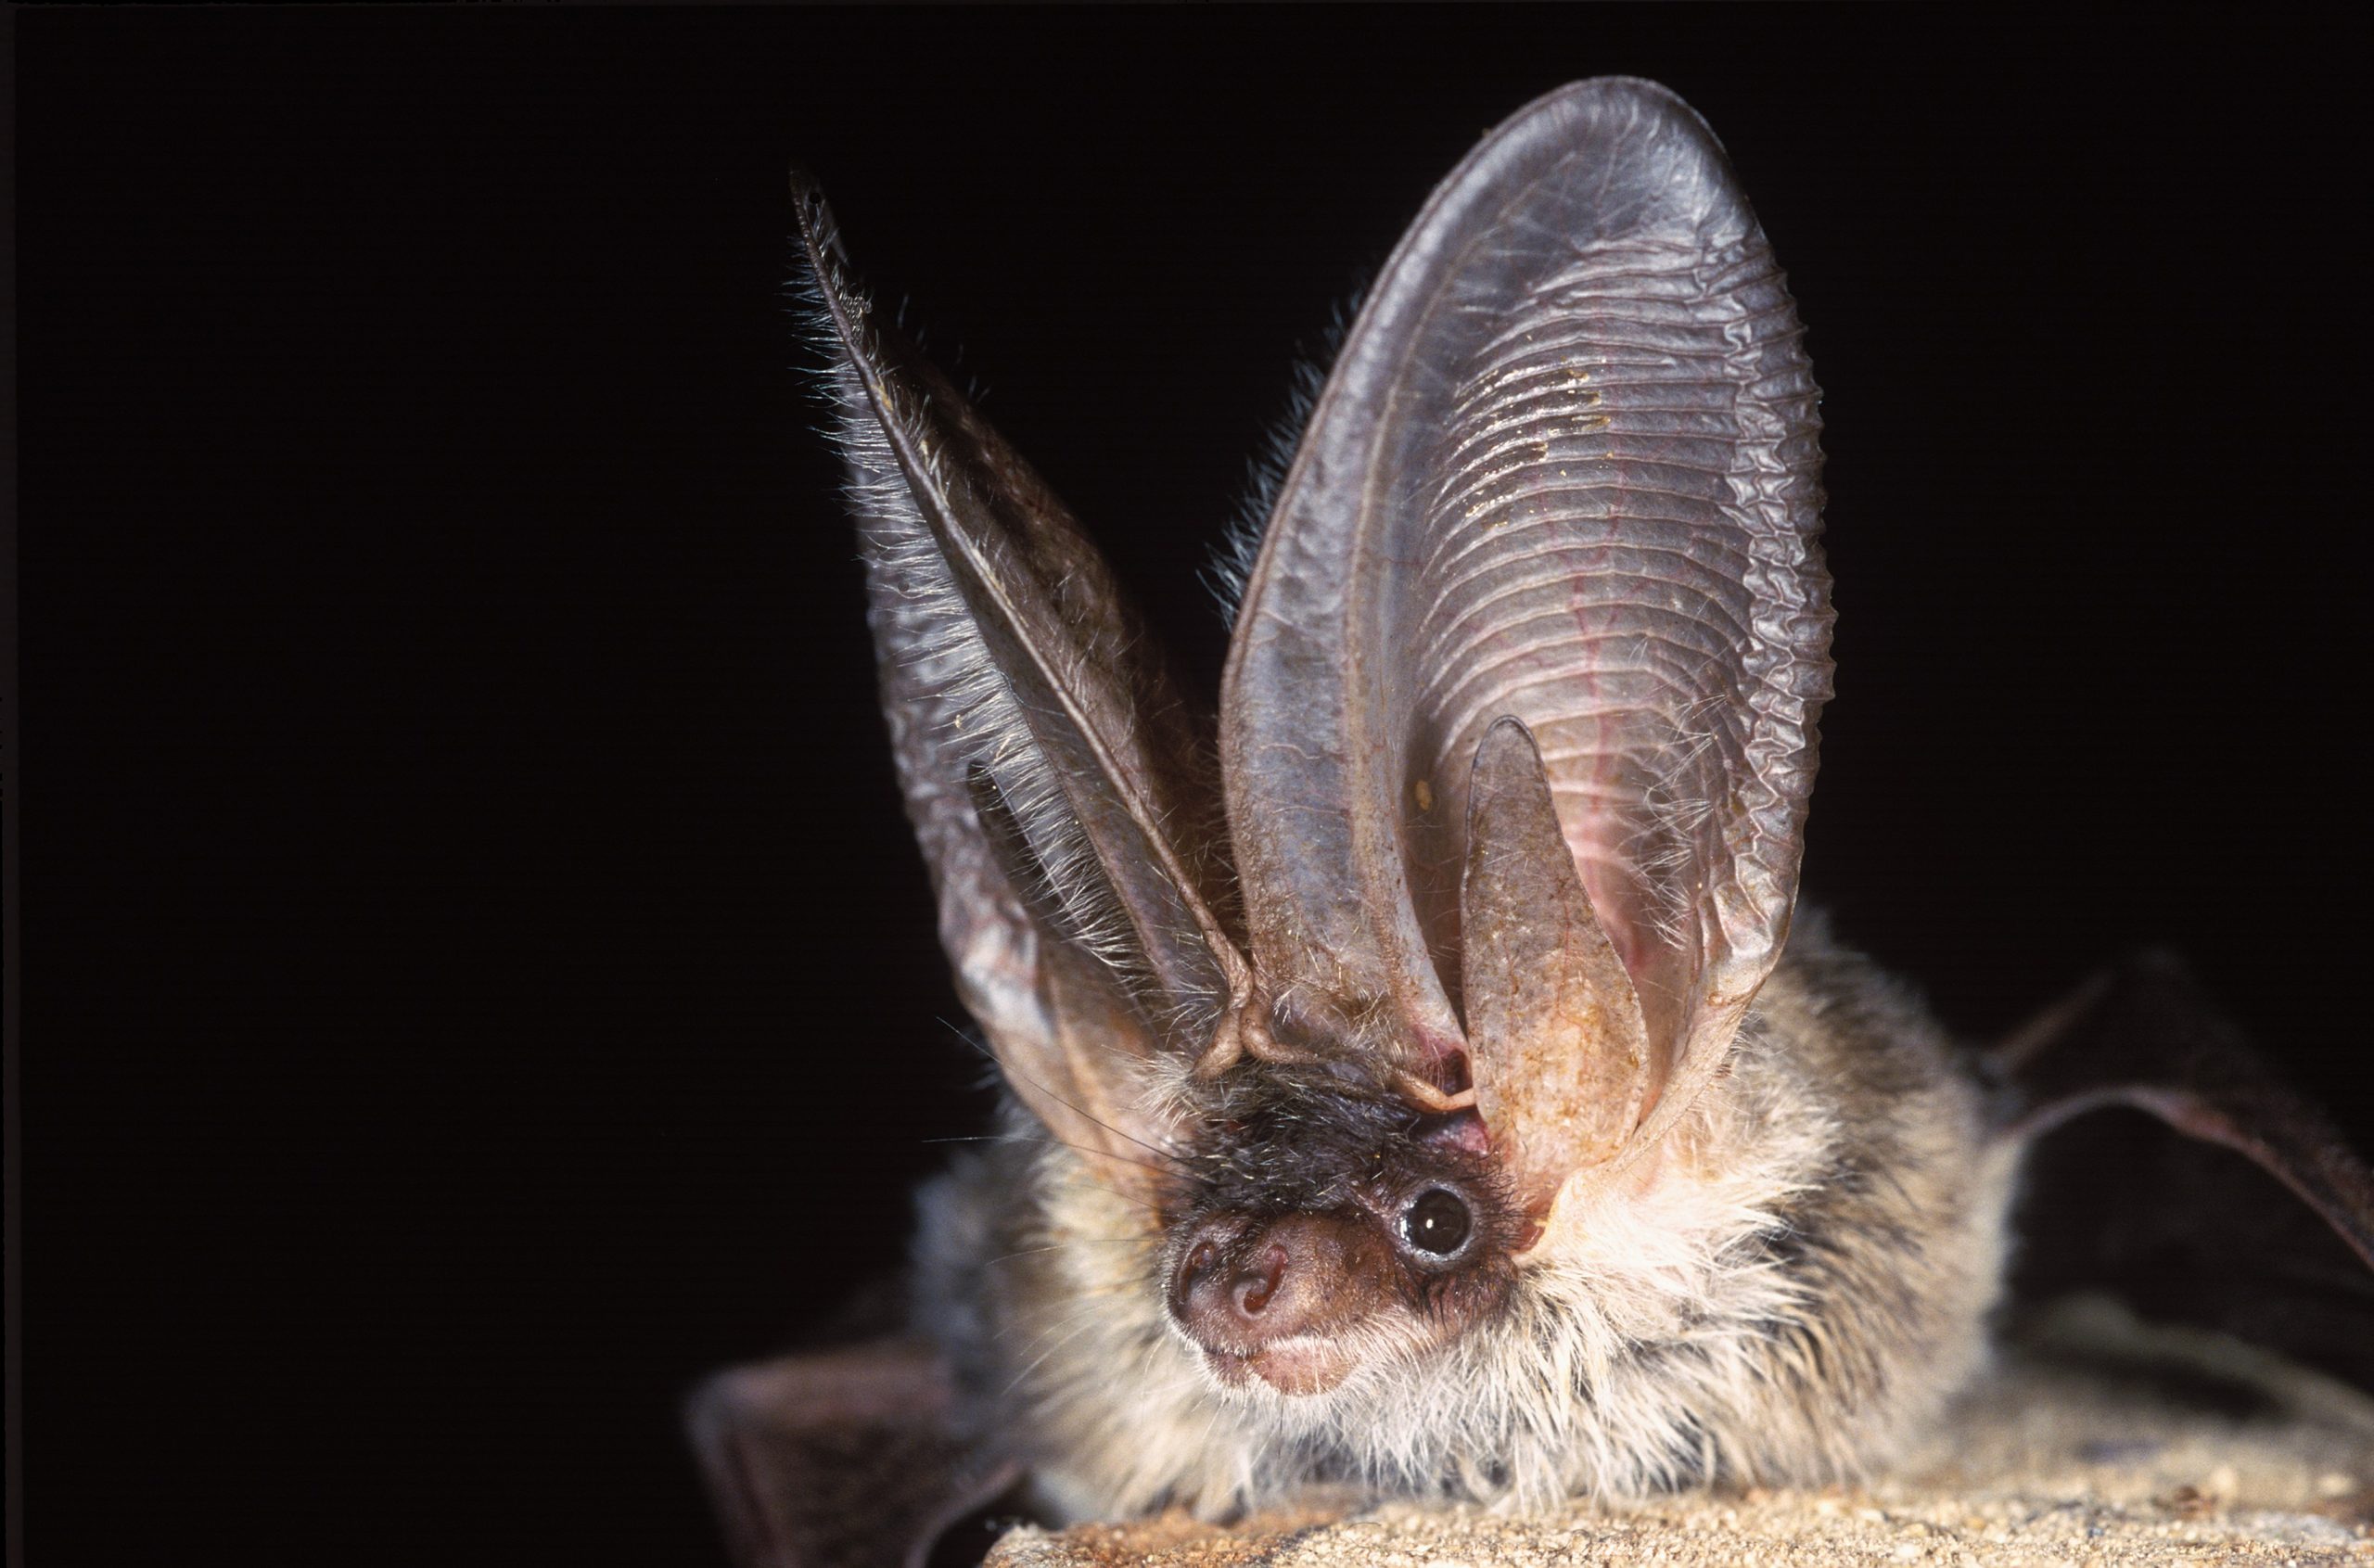  long-eared bat